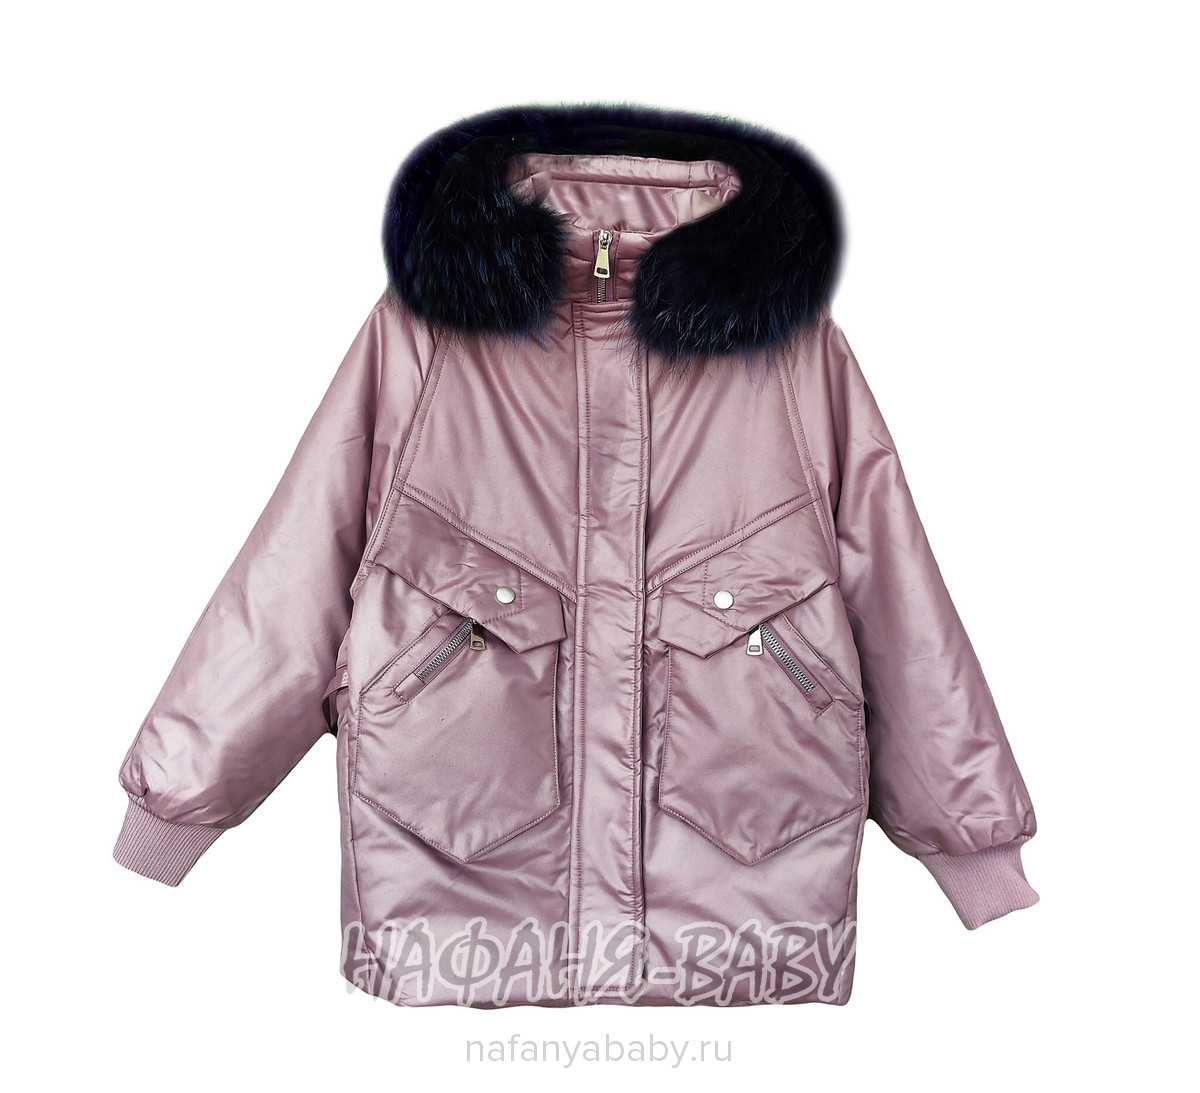 Зимняя удлиненная куртка MAY JM арт: 9205, 10-15 лет, 5-9 лет, оптом Китай (Пекин)